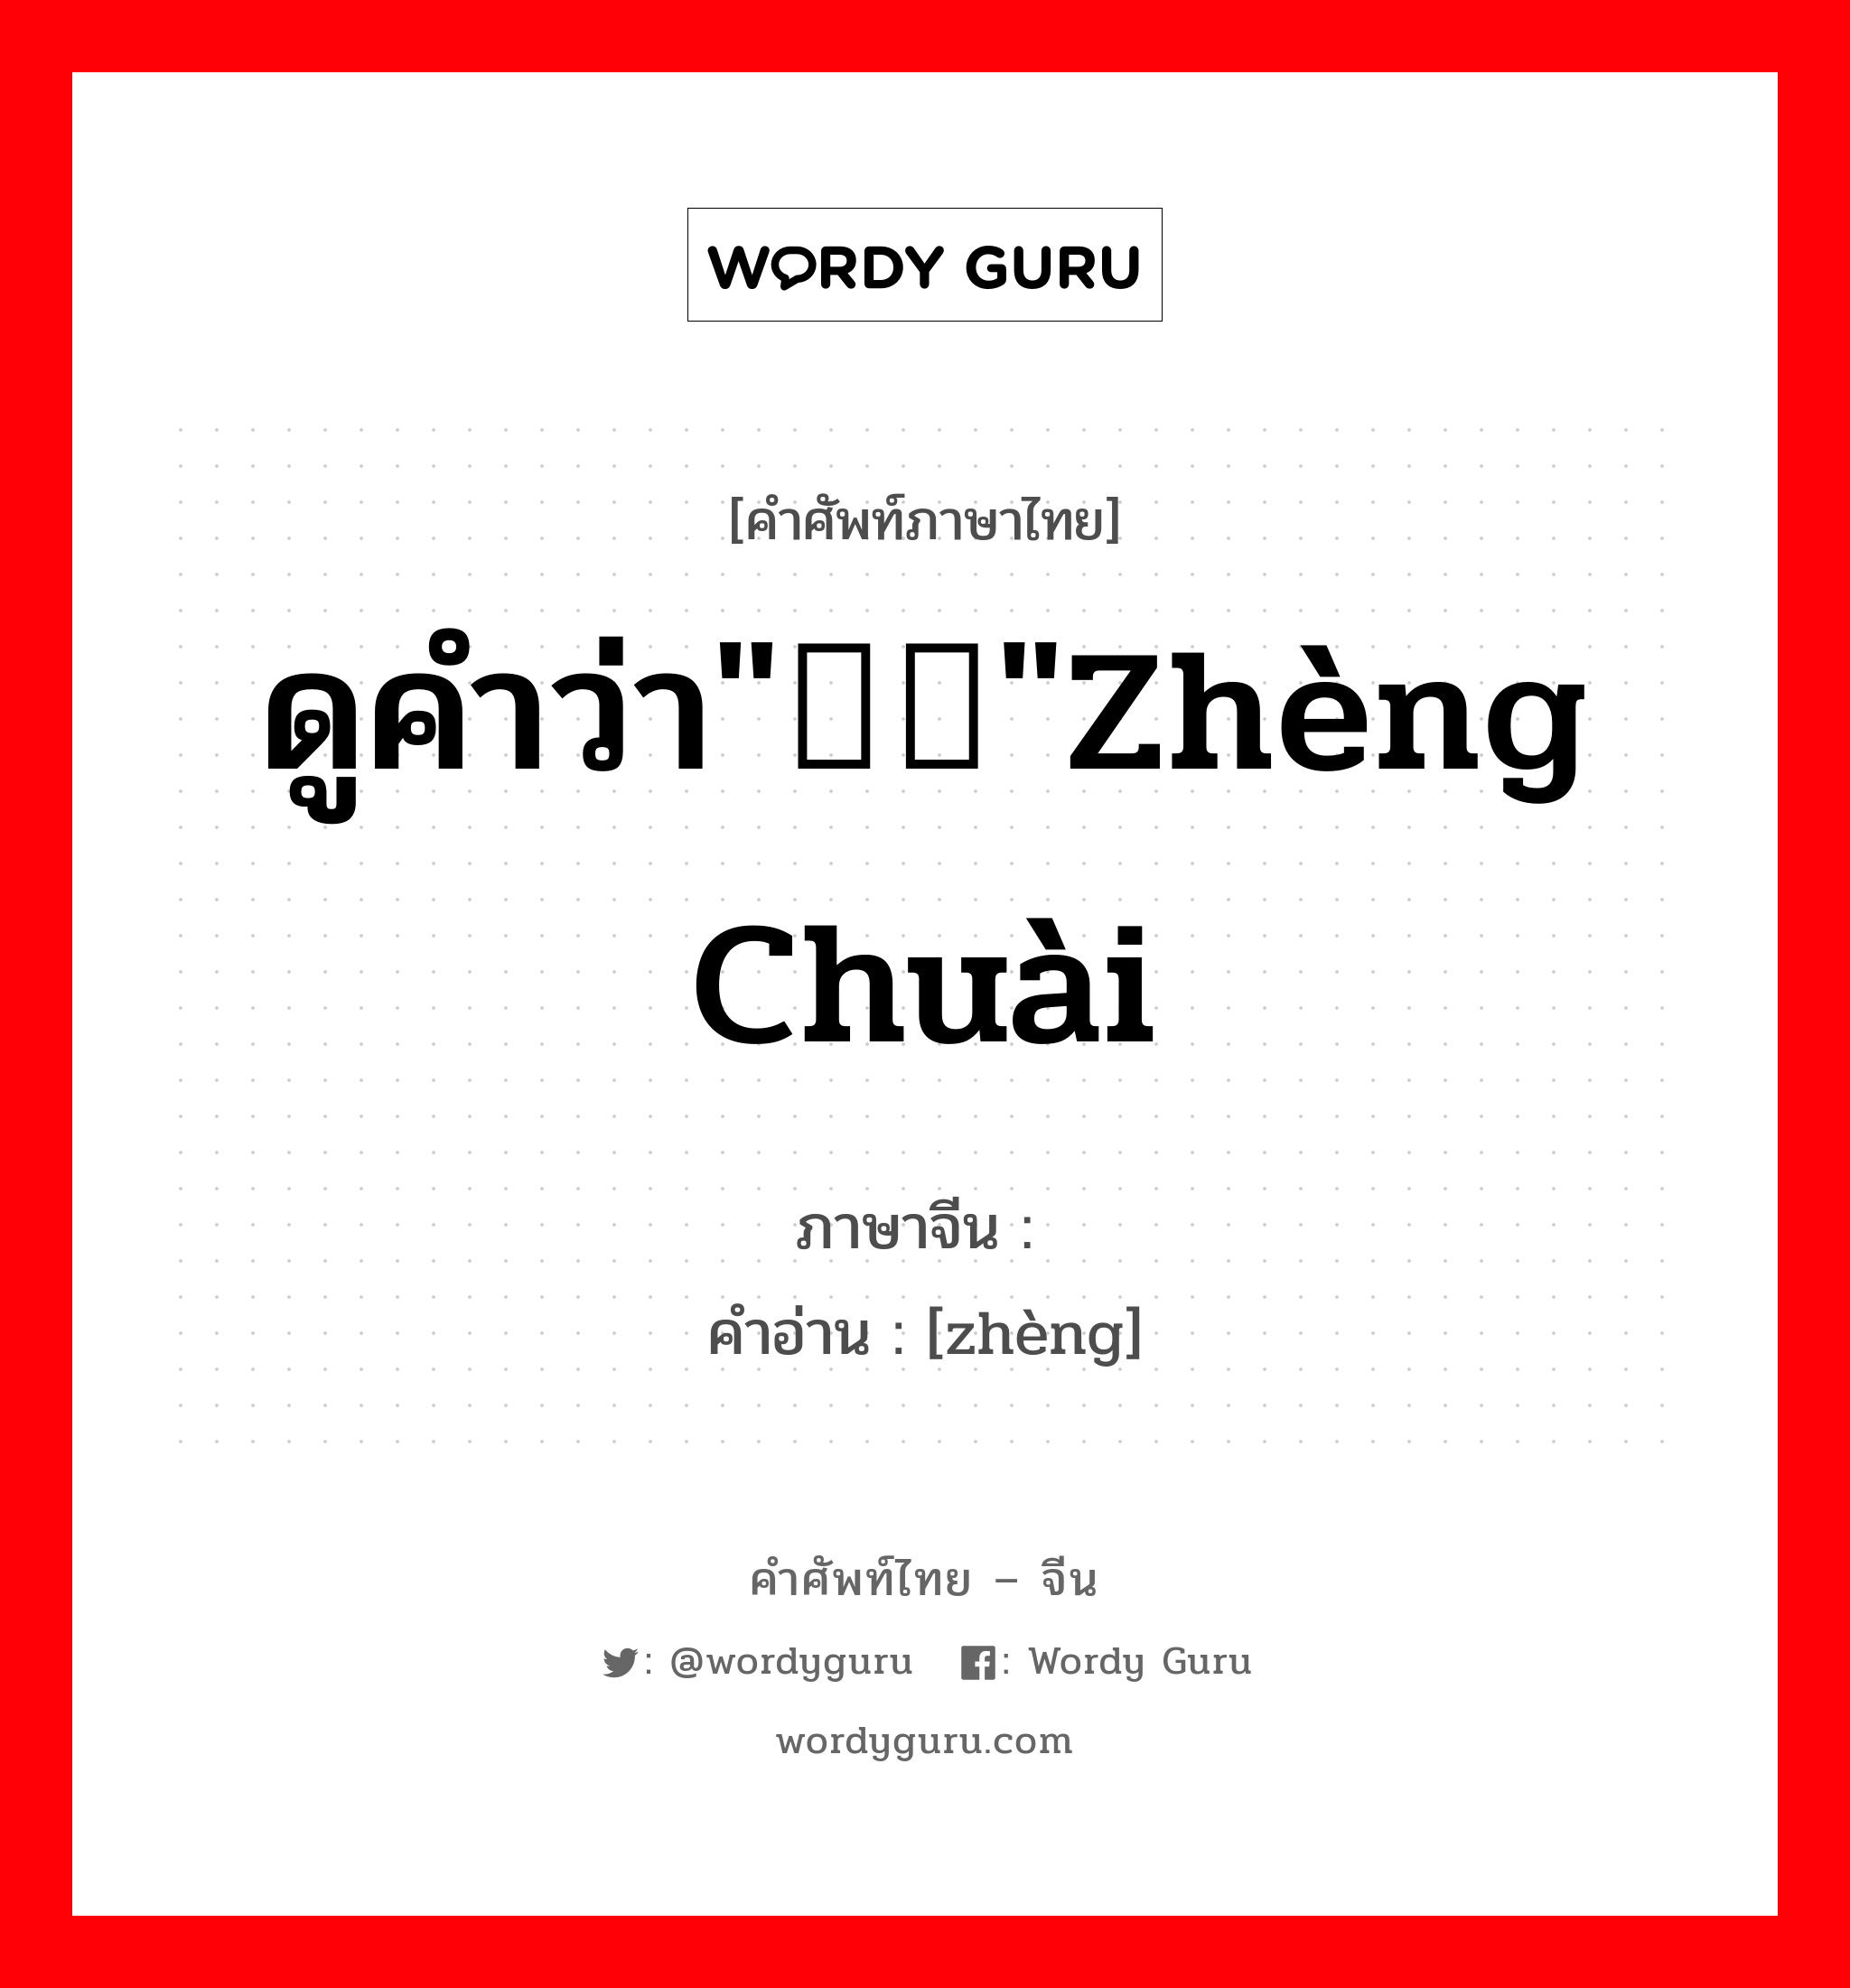 ดูคำว่า""zhèng chuài ภาษาจีนคืออะไร, คำศัพท์ภาษาไทย - จีน ดูคำว่า""zhèng chuài ภาษาจีน  คำอ่าน [zhèng]